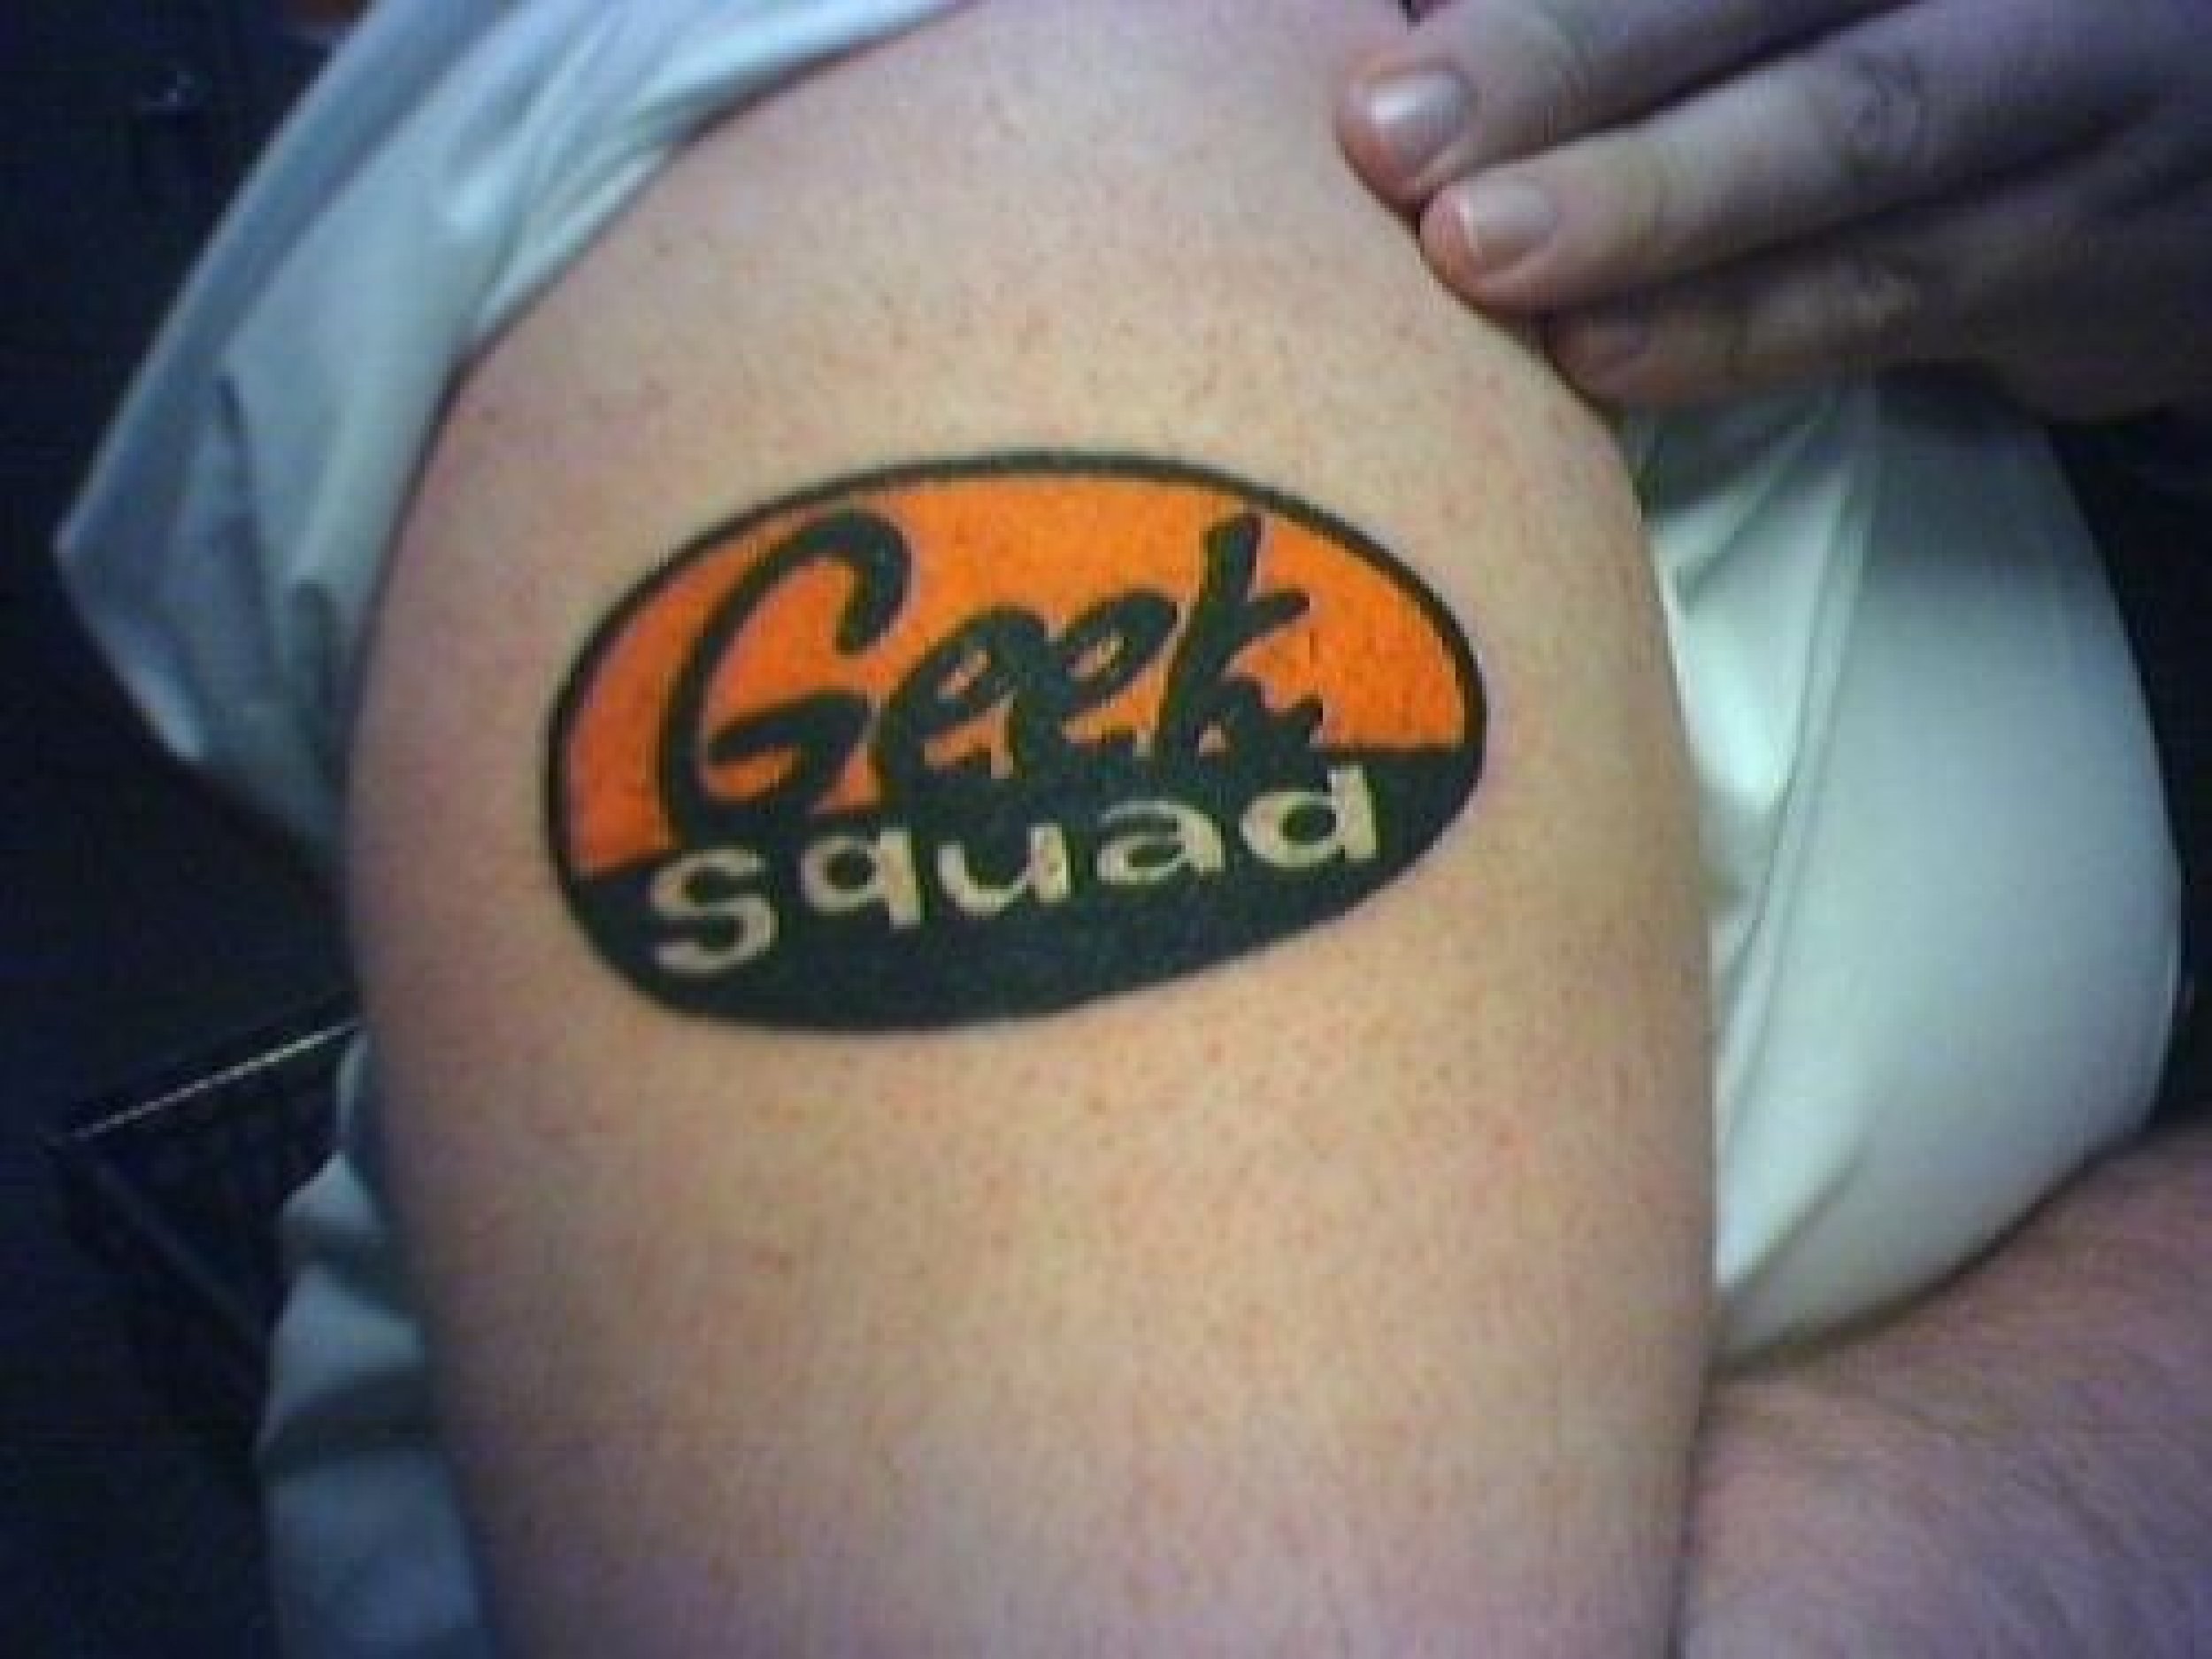 Geeky tattoos